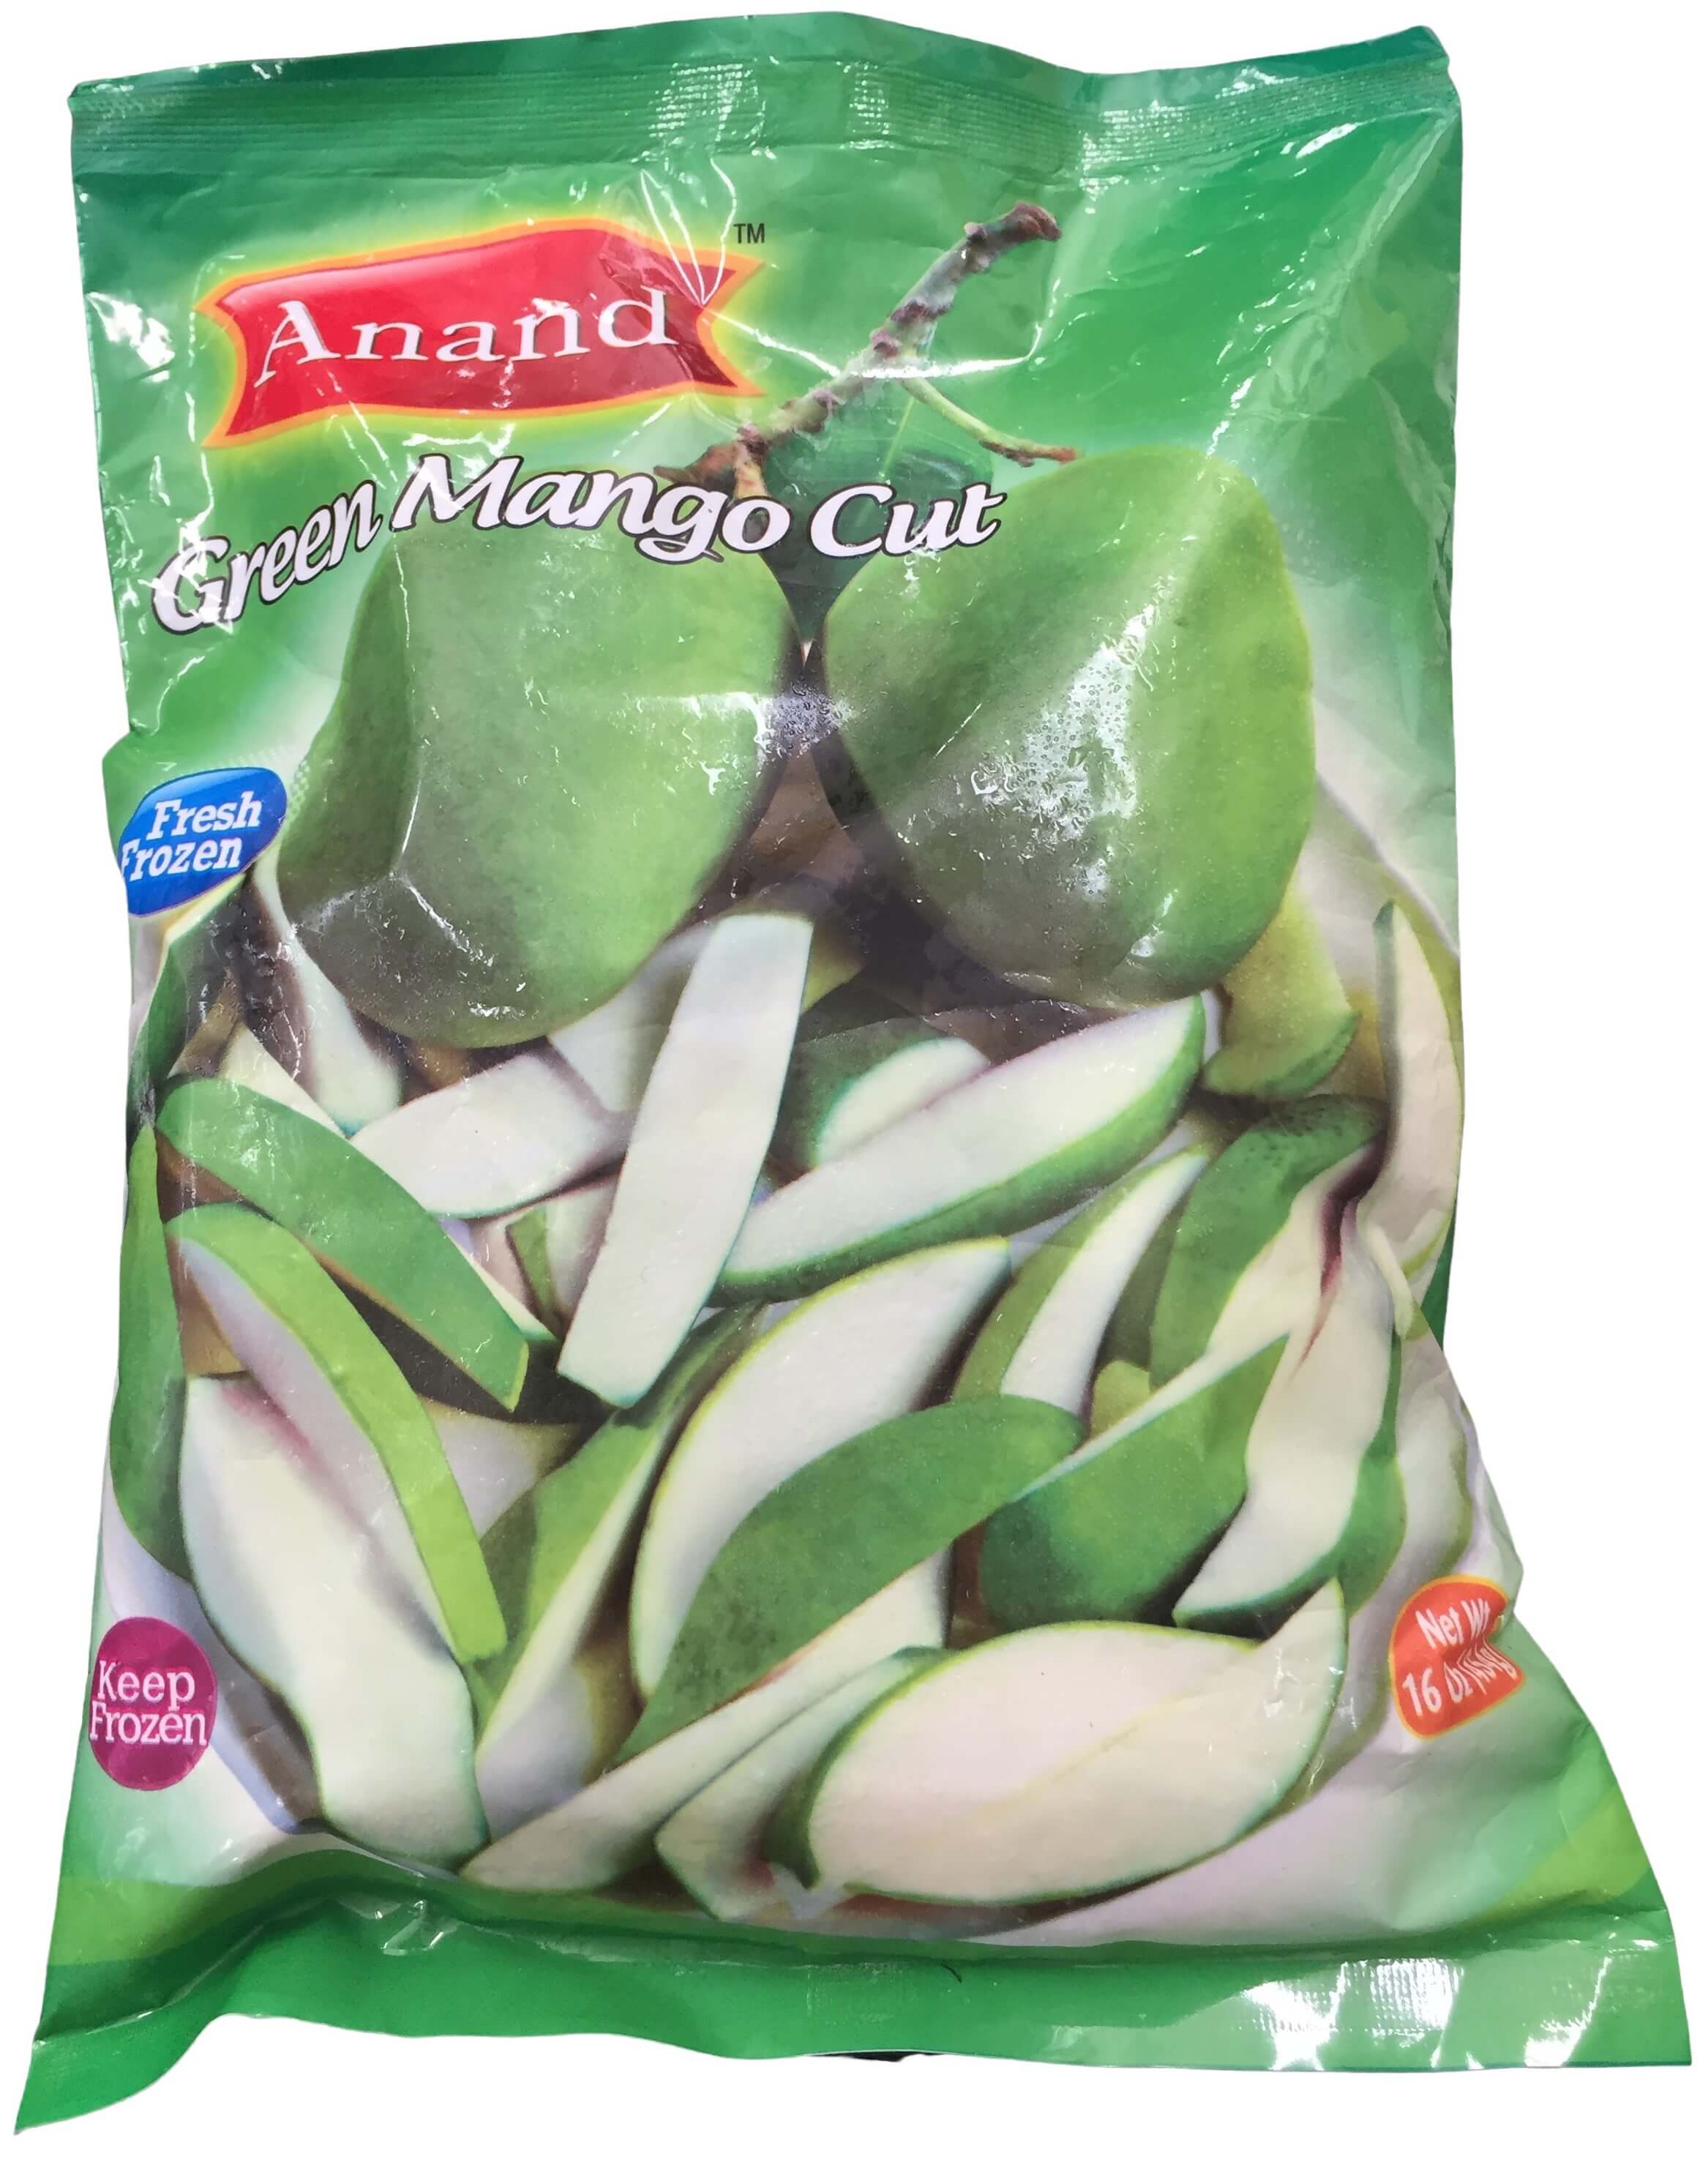 Anand Green Cut Mango, 454 g, (Frozen)